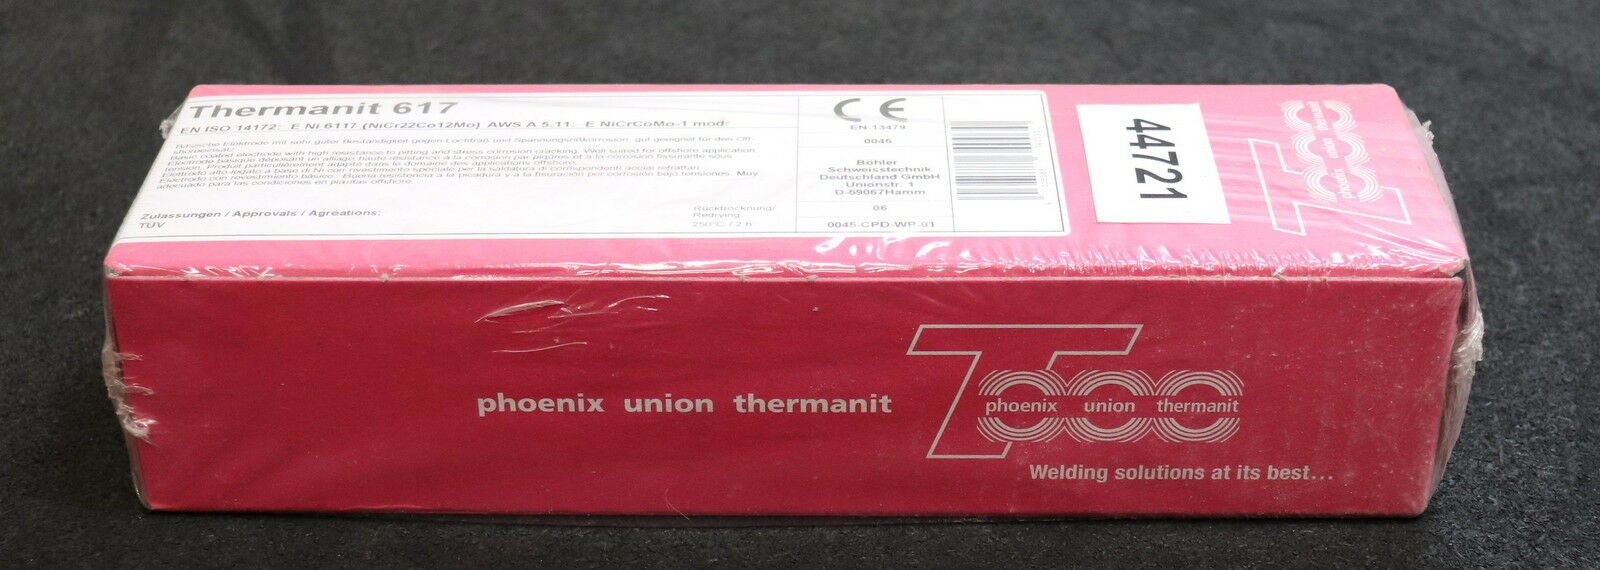 BÖHLER 1 Pack Stabelektroden Inhalt ca. 240 Elektroden Thermanit 617 40-55A